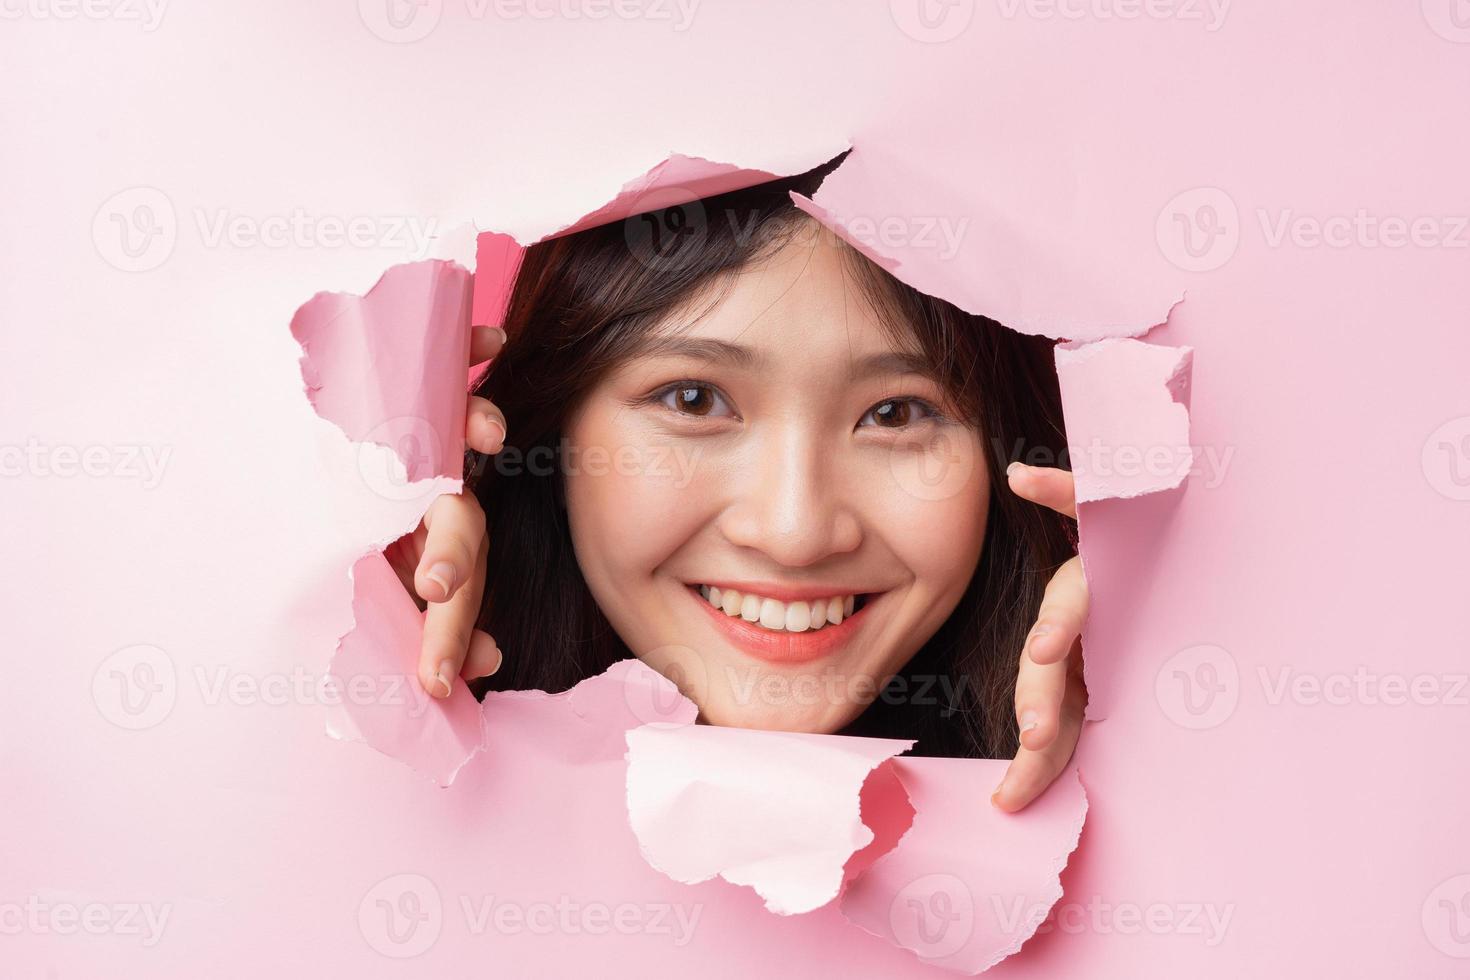 jovem mulher asiática enfiou a cabeça através do papel rasgado foto